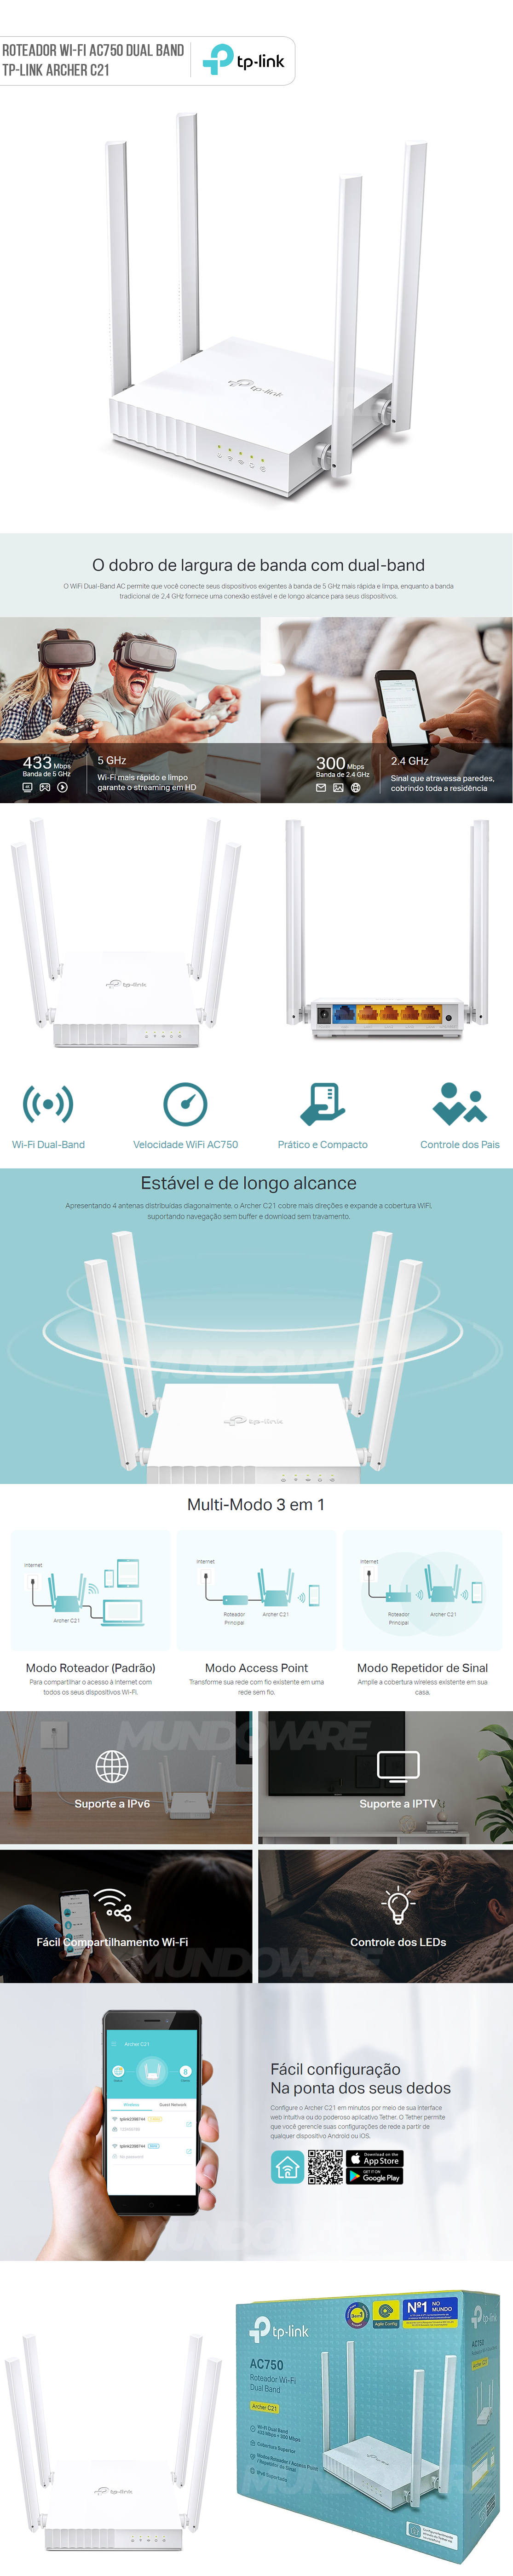 Roteador Wi-Fi AC750 TP-Link Archer C21 Dual Band 4 Antenas Multi-Modo 3 em 1